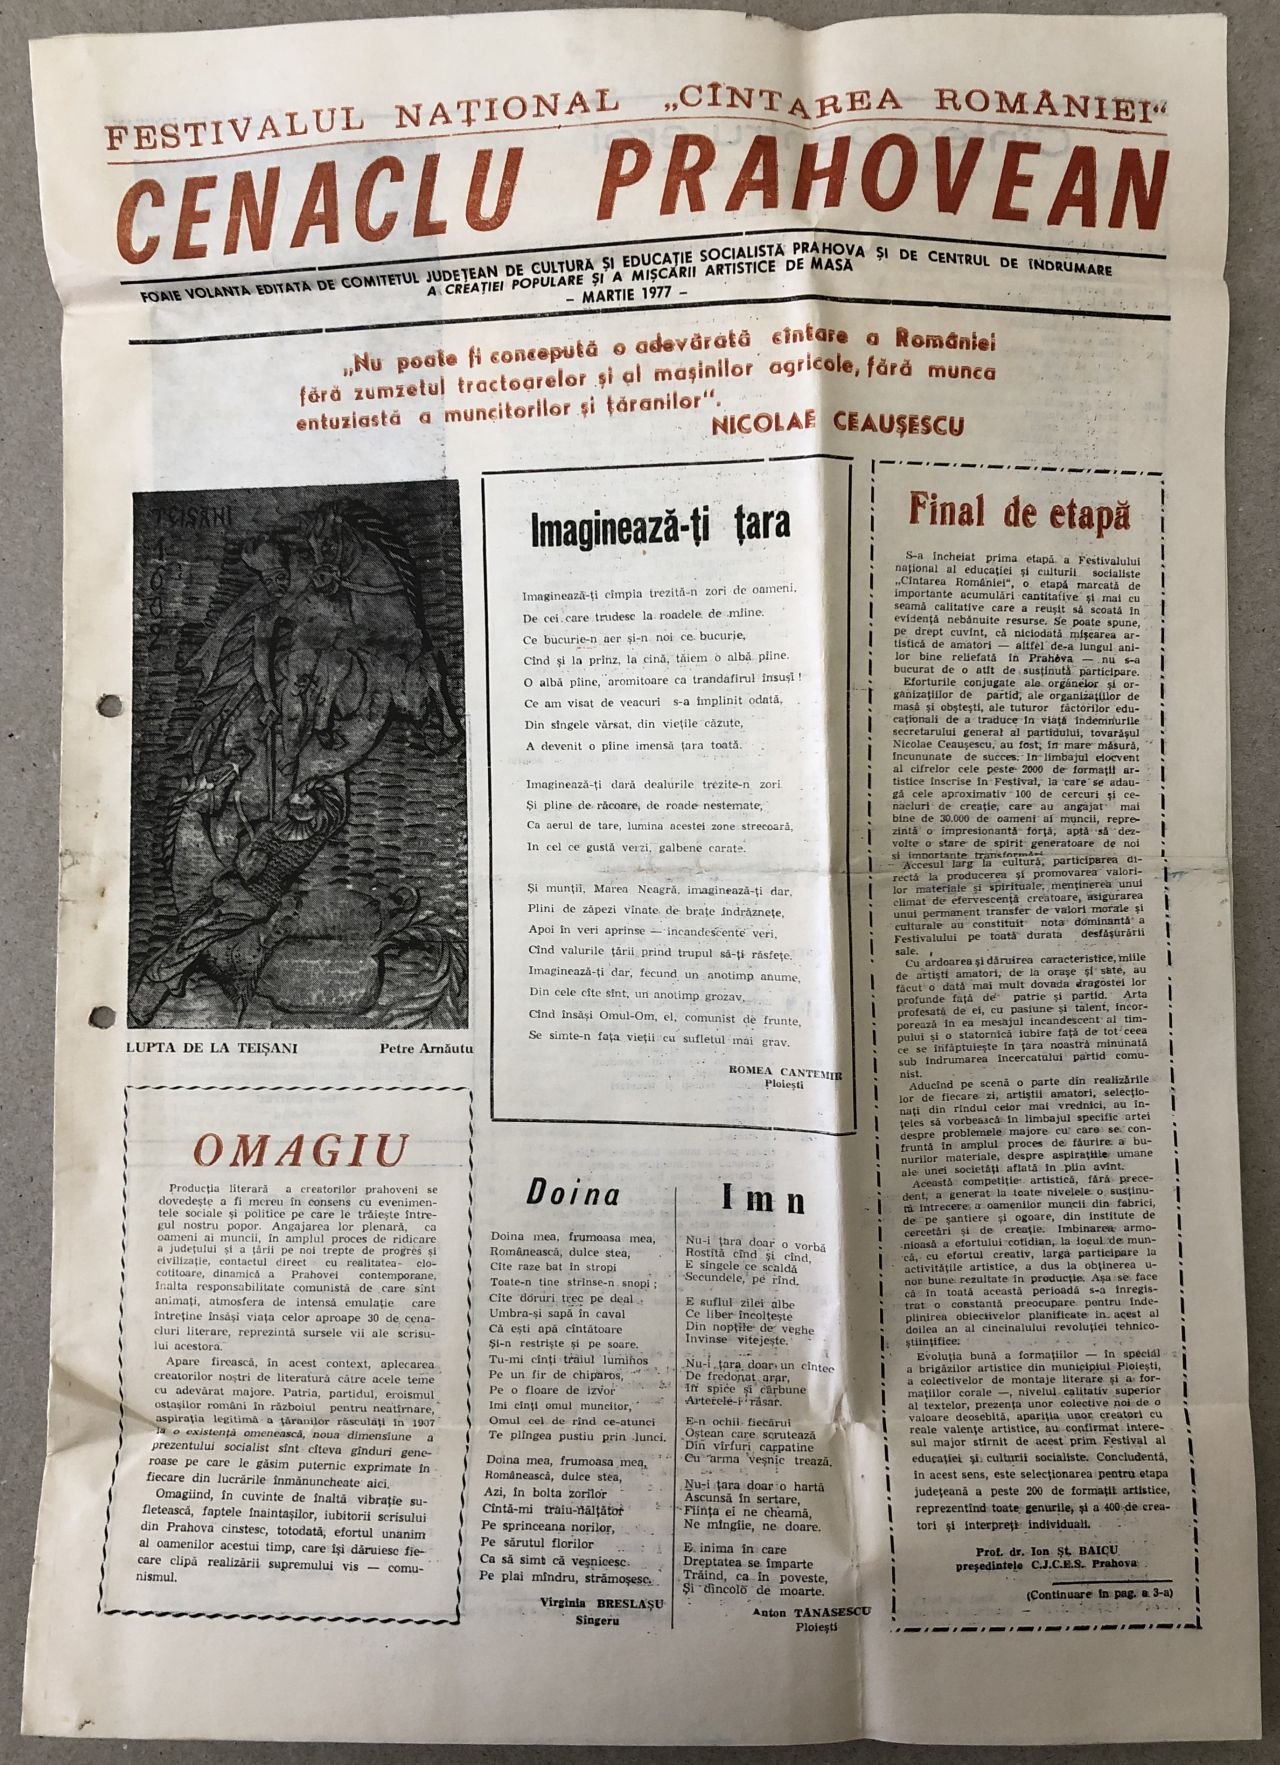 Flawless lawn Specificity Cenaclul Prahovean, Cantarea Romaniei, ziar vechi (raritate), poezii si  texte de propaganda, Prahova, martie 1977 – kolectionarul.ro